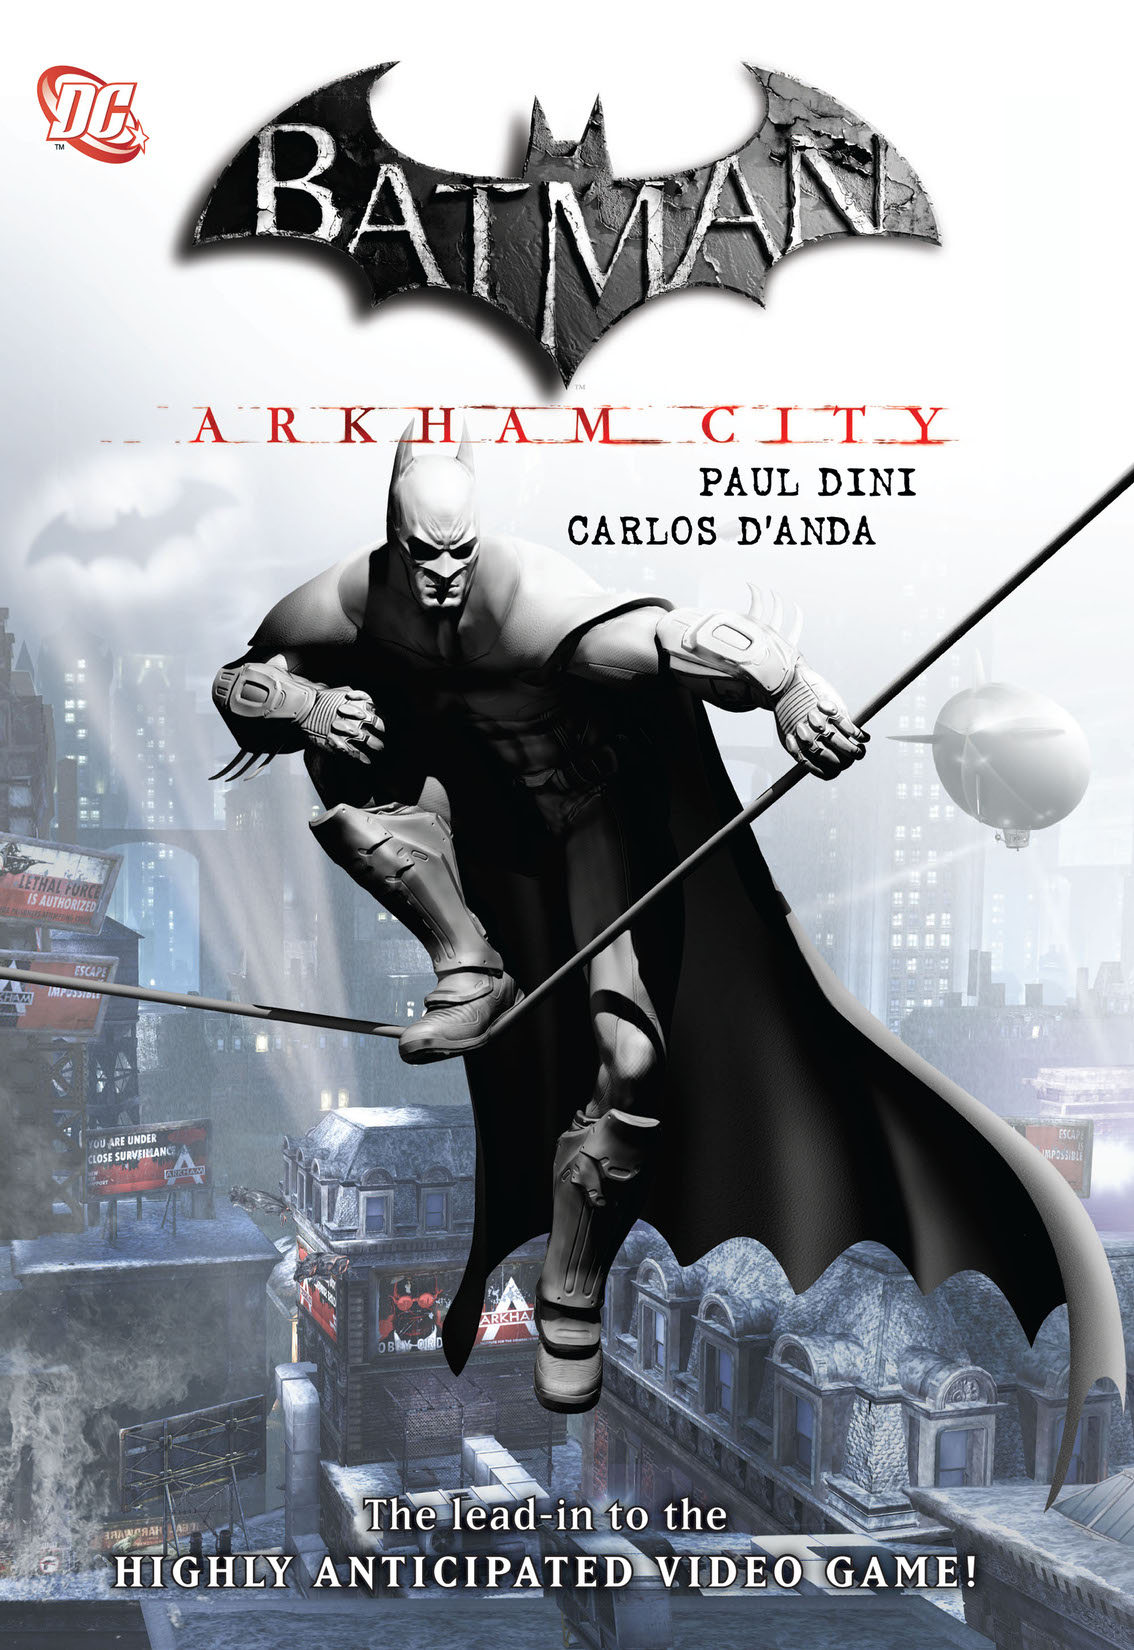 Batman: Arkham City preview images